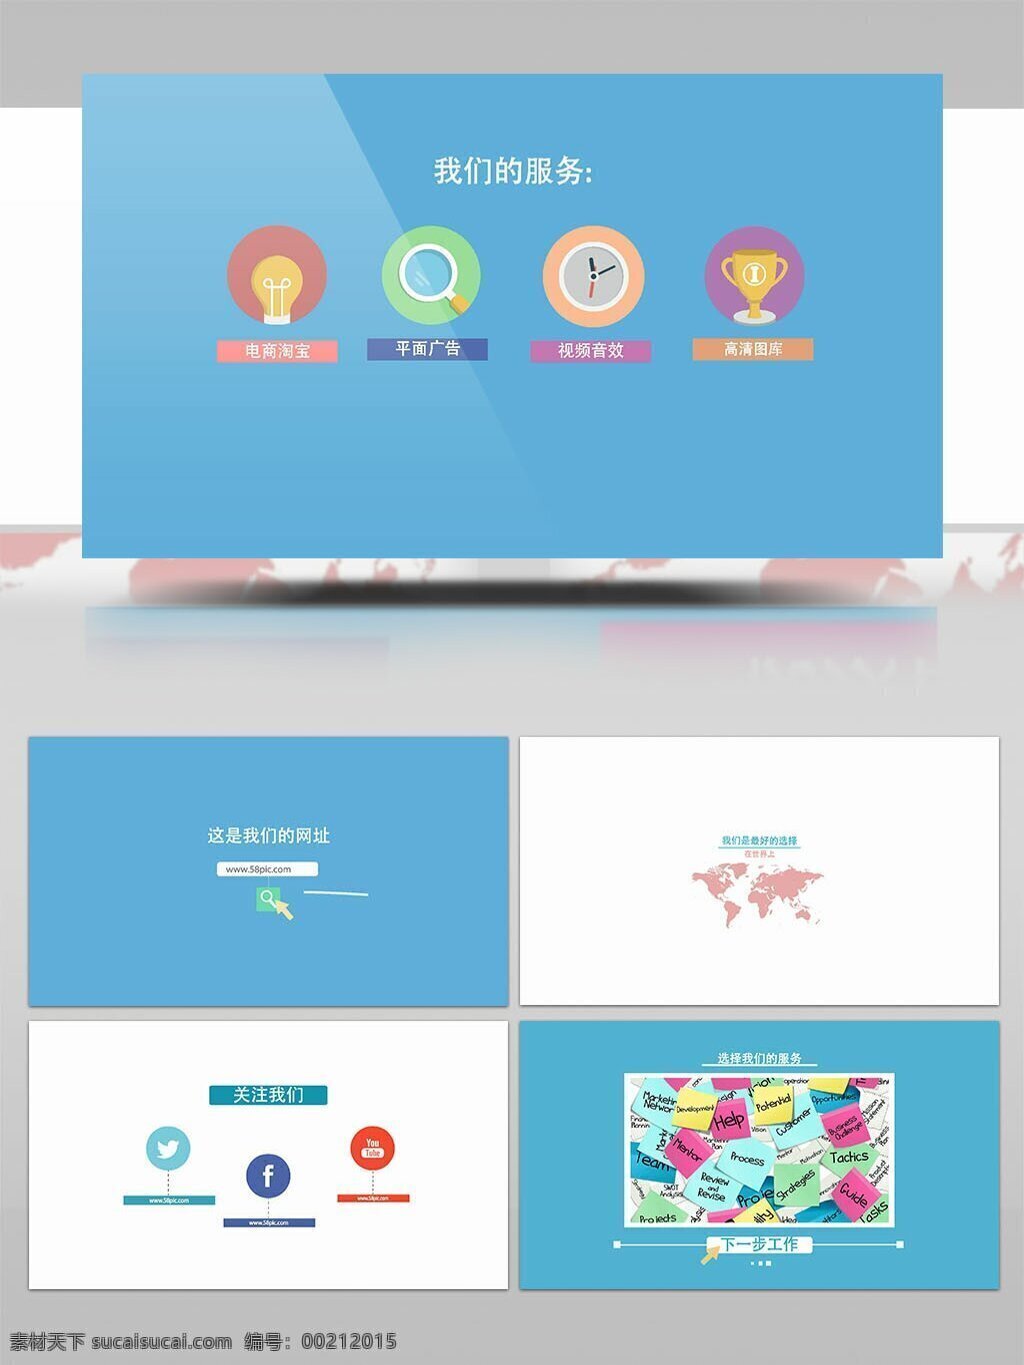 用户服务 科技 体验 mg 动画 宣传 视频 ae 模板 服务 企业 商务 mg动画 展示 ae模板